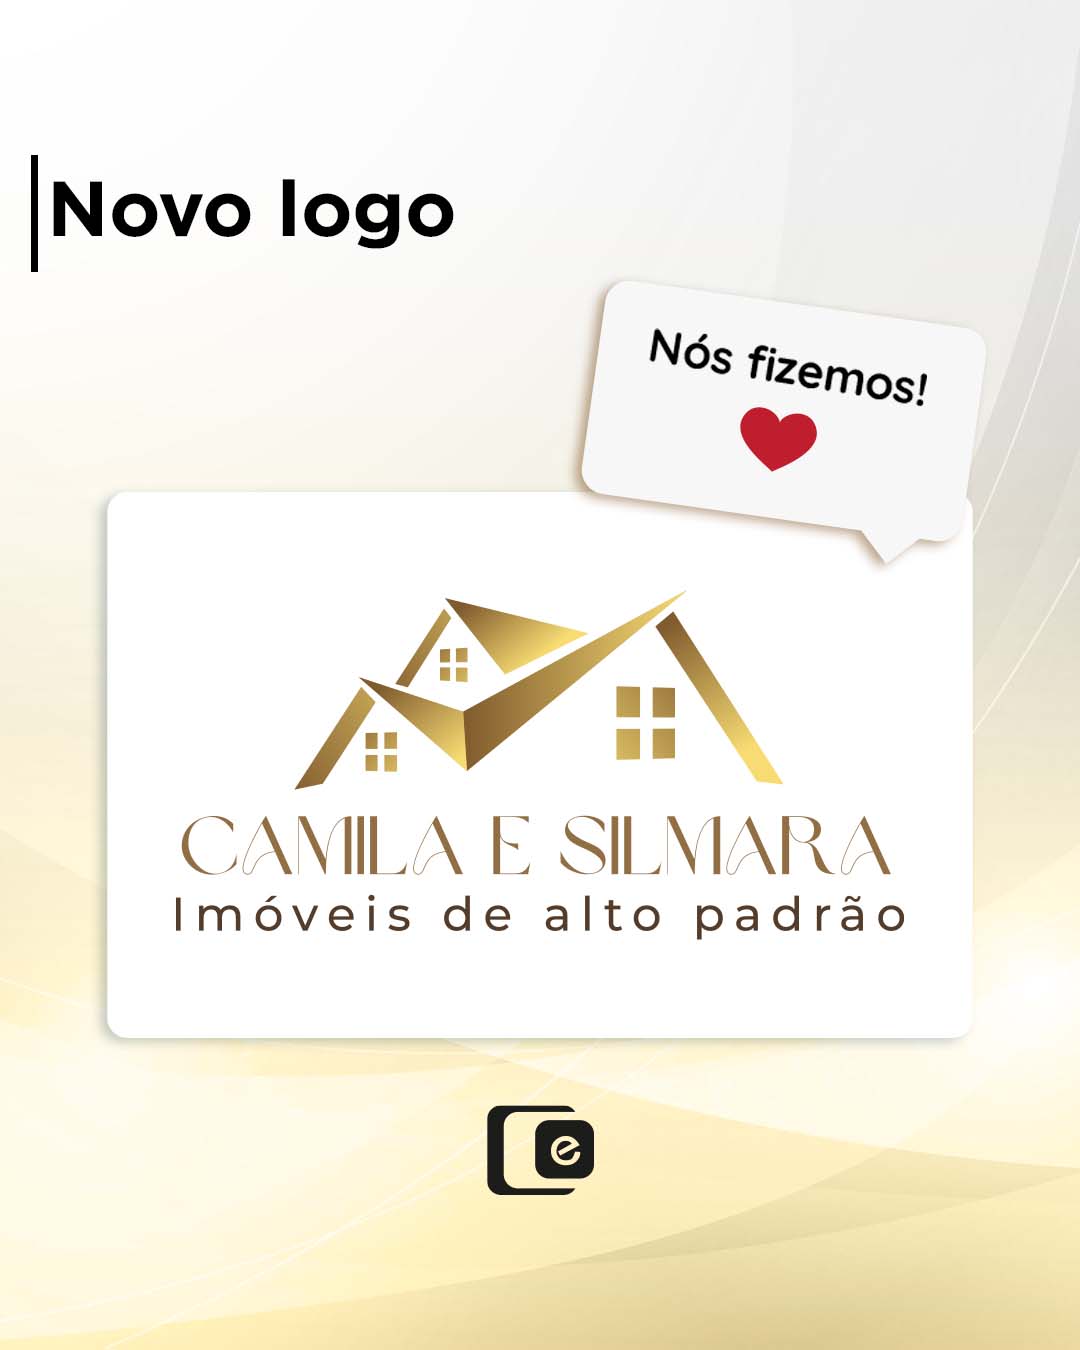 Com muito orgulho apresentamos a logo da Camila e Silmara que foi criada pela nossa equipe de design!